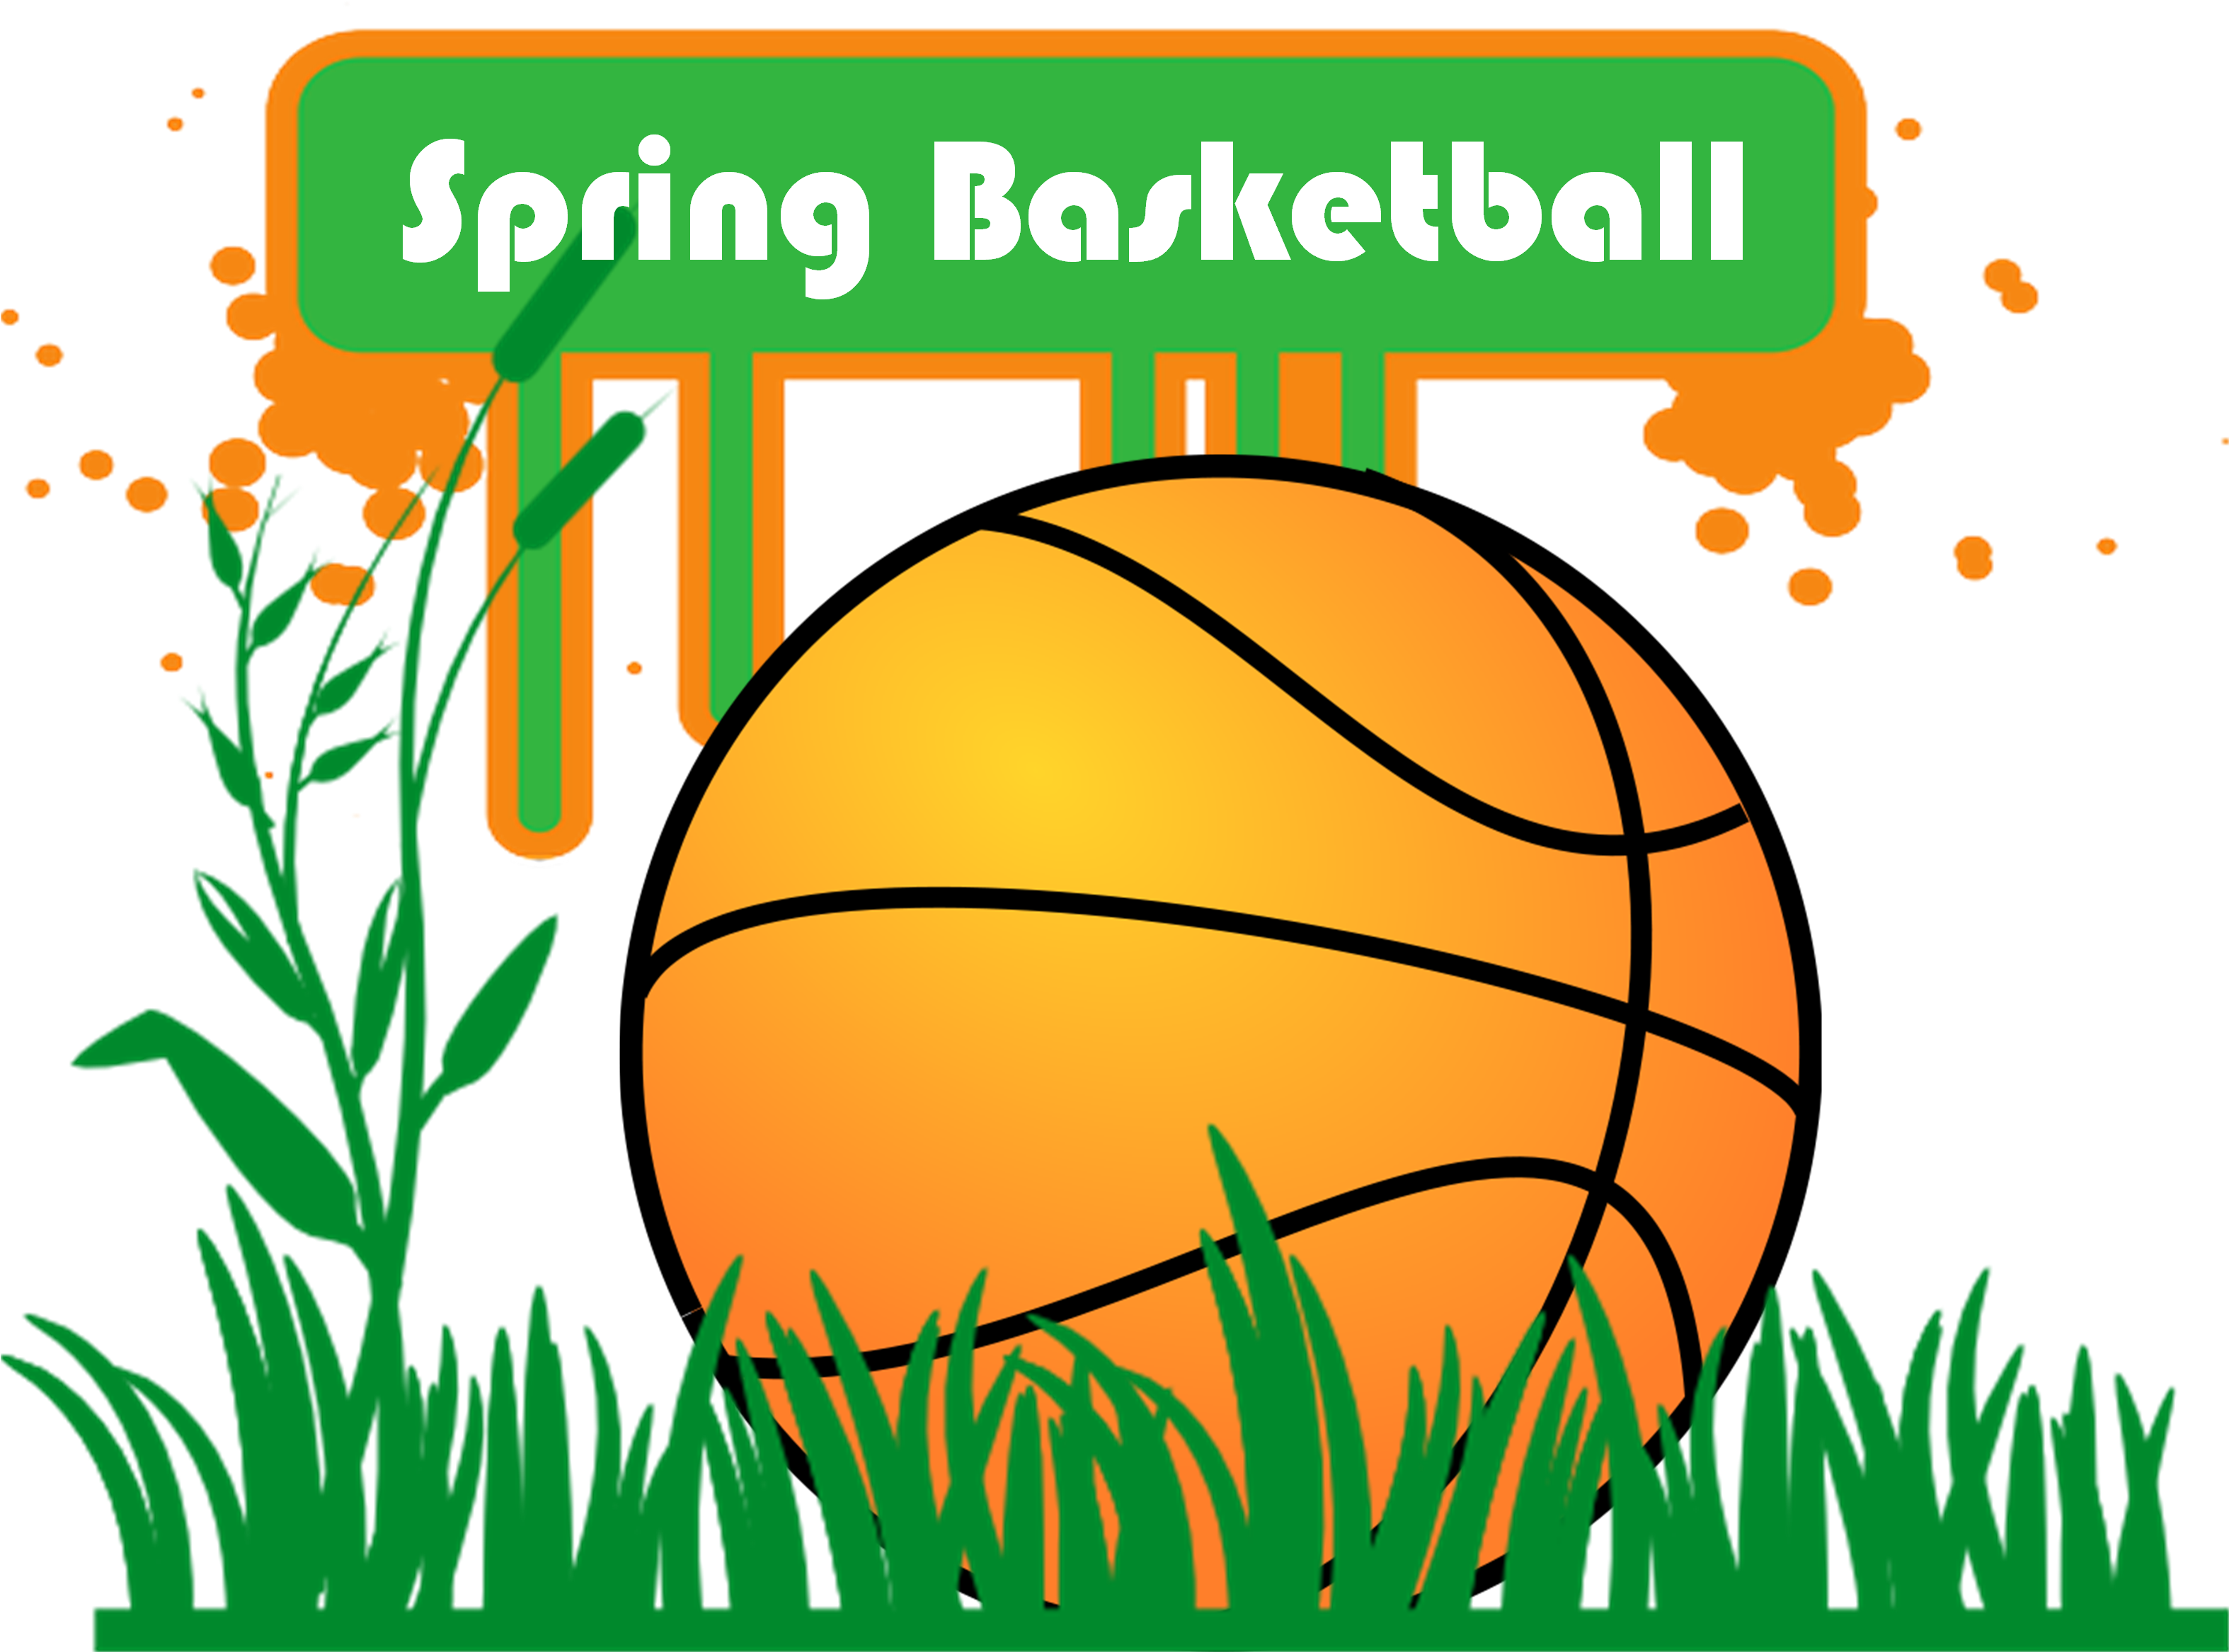 Spring Basketball - Spring Forward Landscapes (3151x2401)